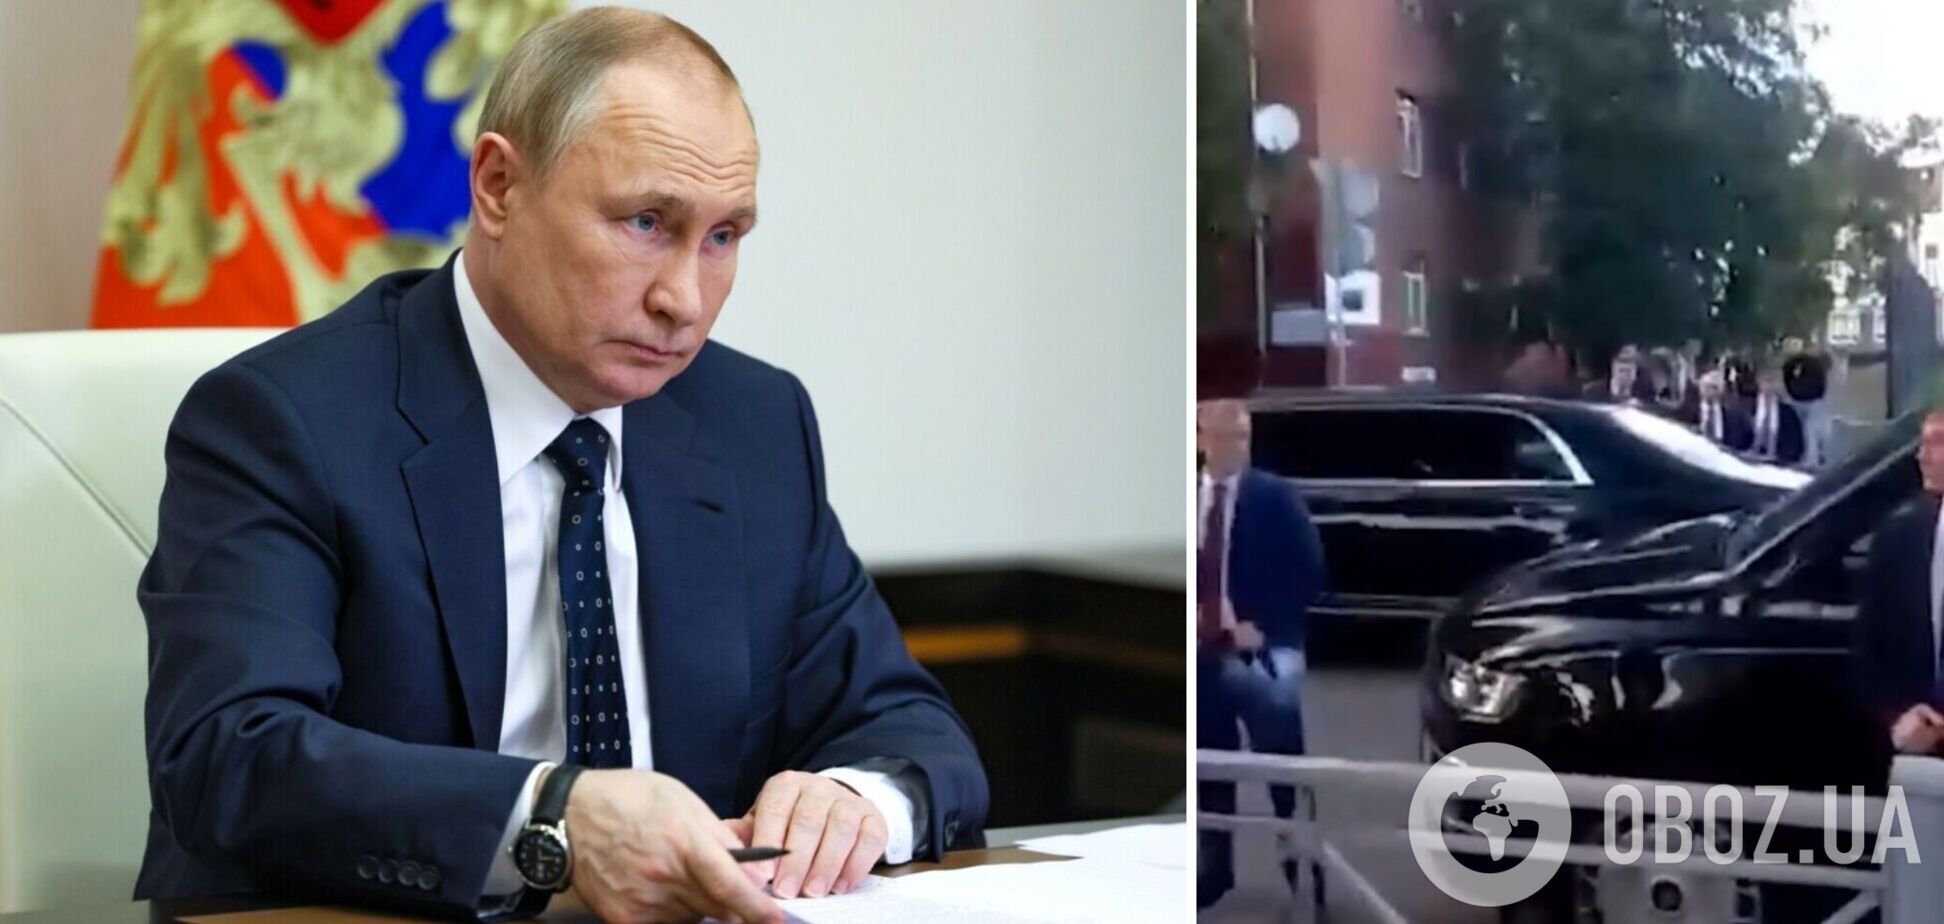 Решил поиграть в доброго царя: в Калининграде Путин остановил кортеж, чтобы спросить у горожан о губернаторе. Видео